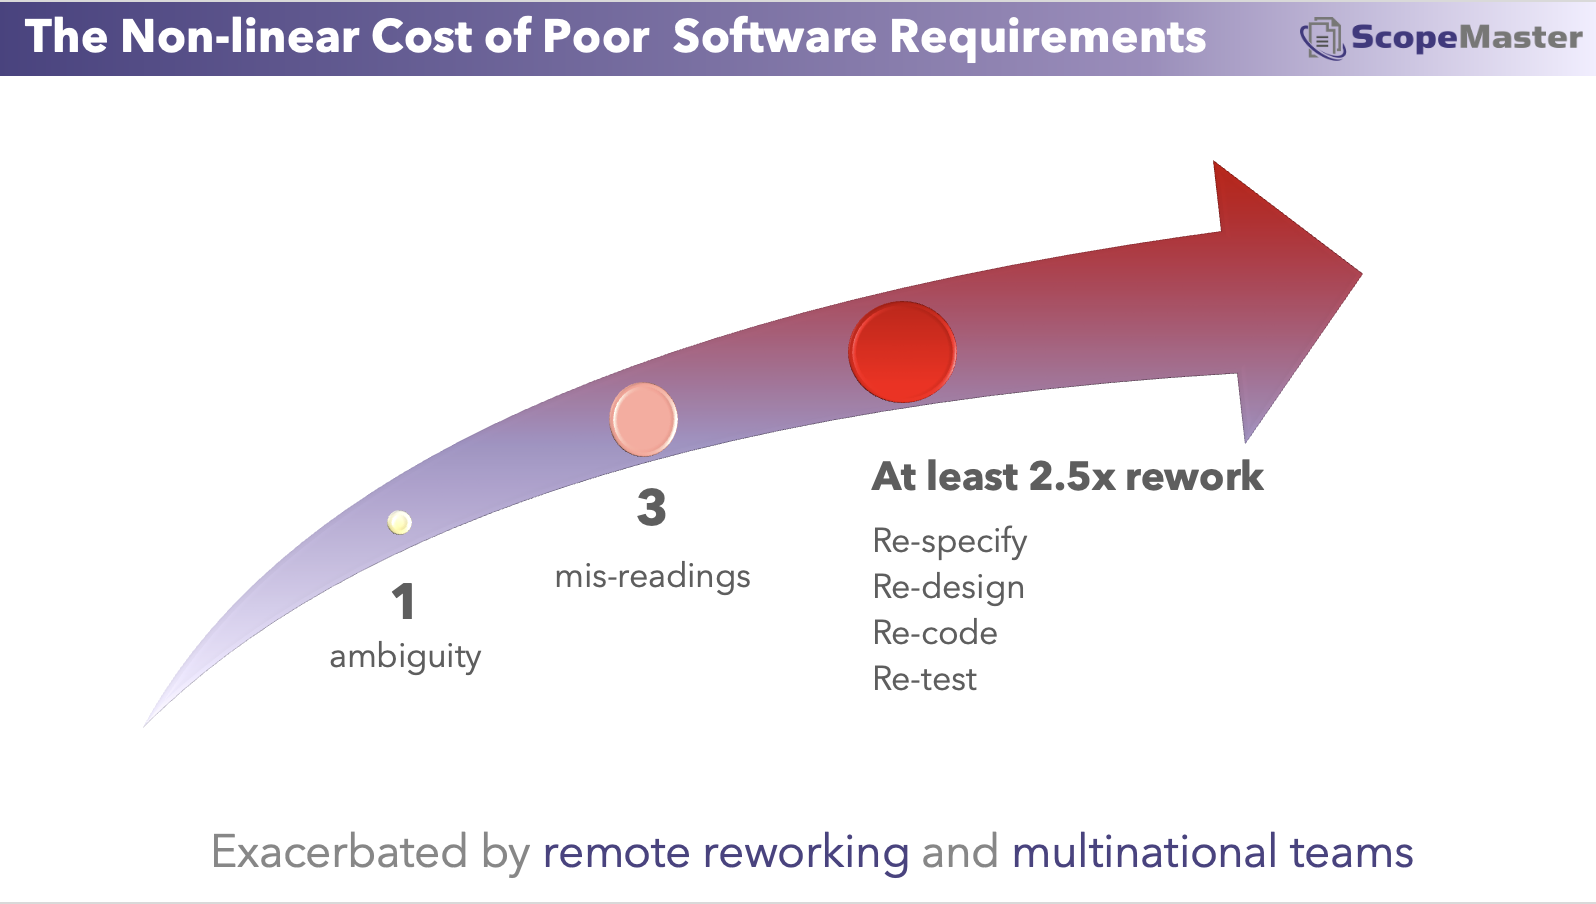 Le coût des exigences logicielles de mauvaise qualité pour générer des retouches